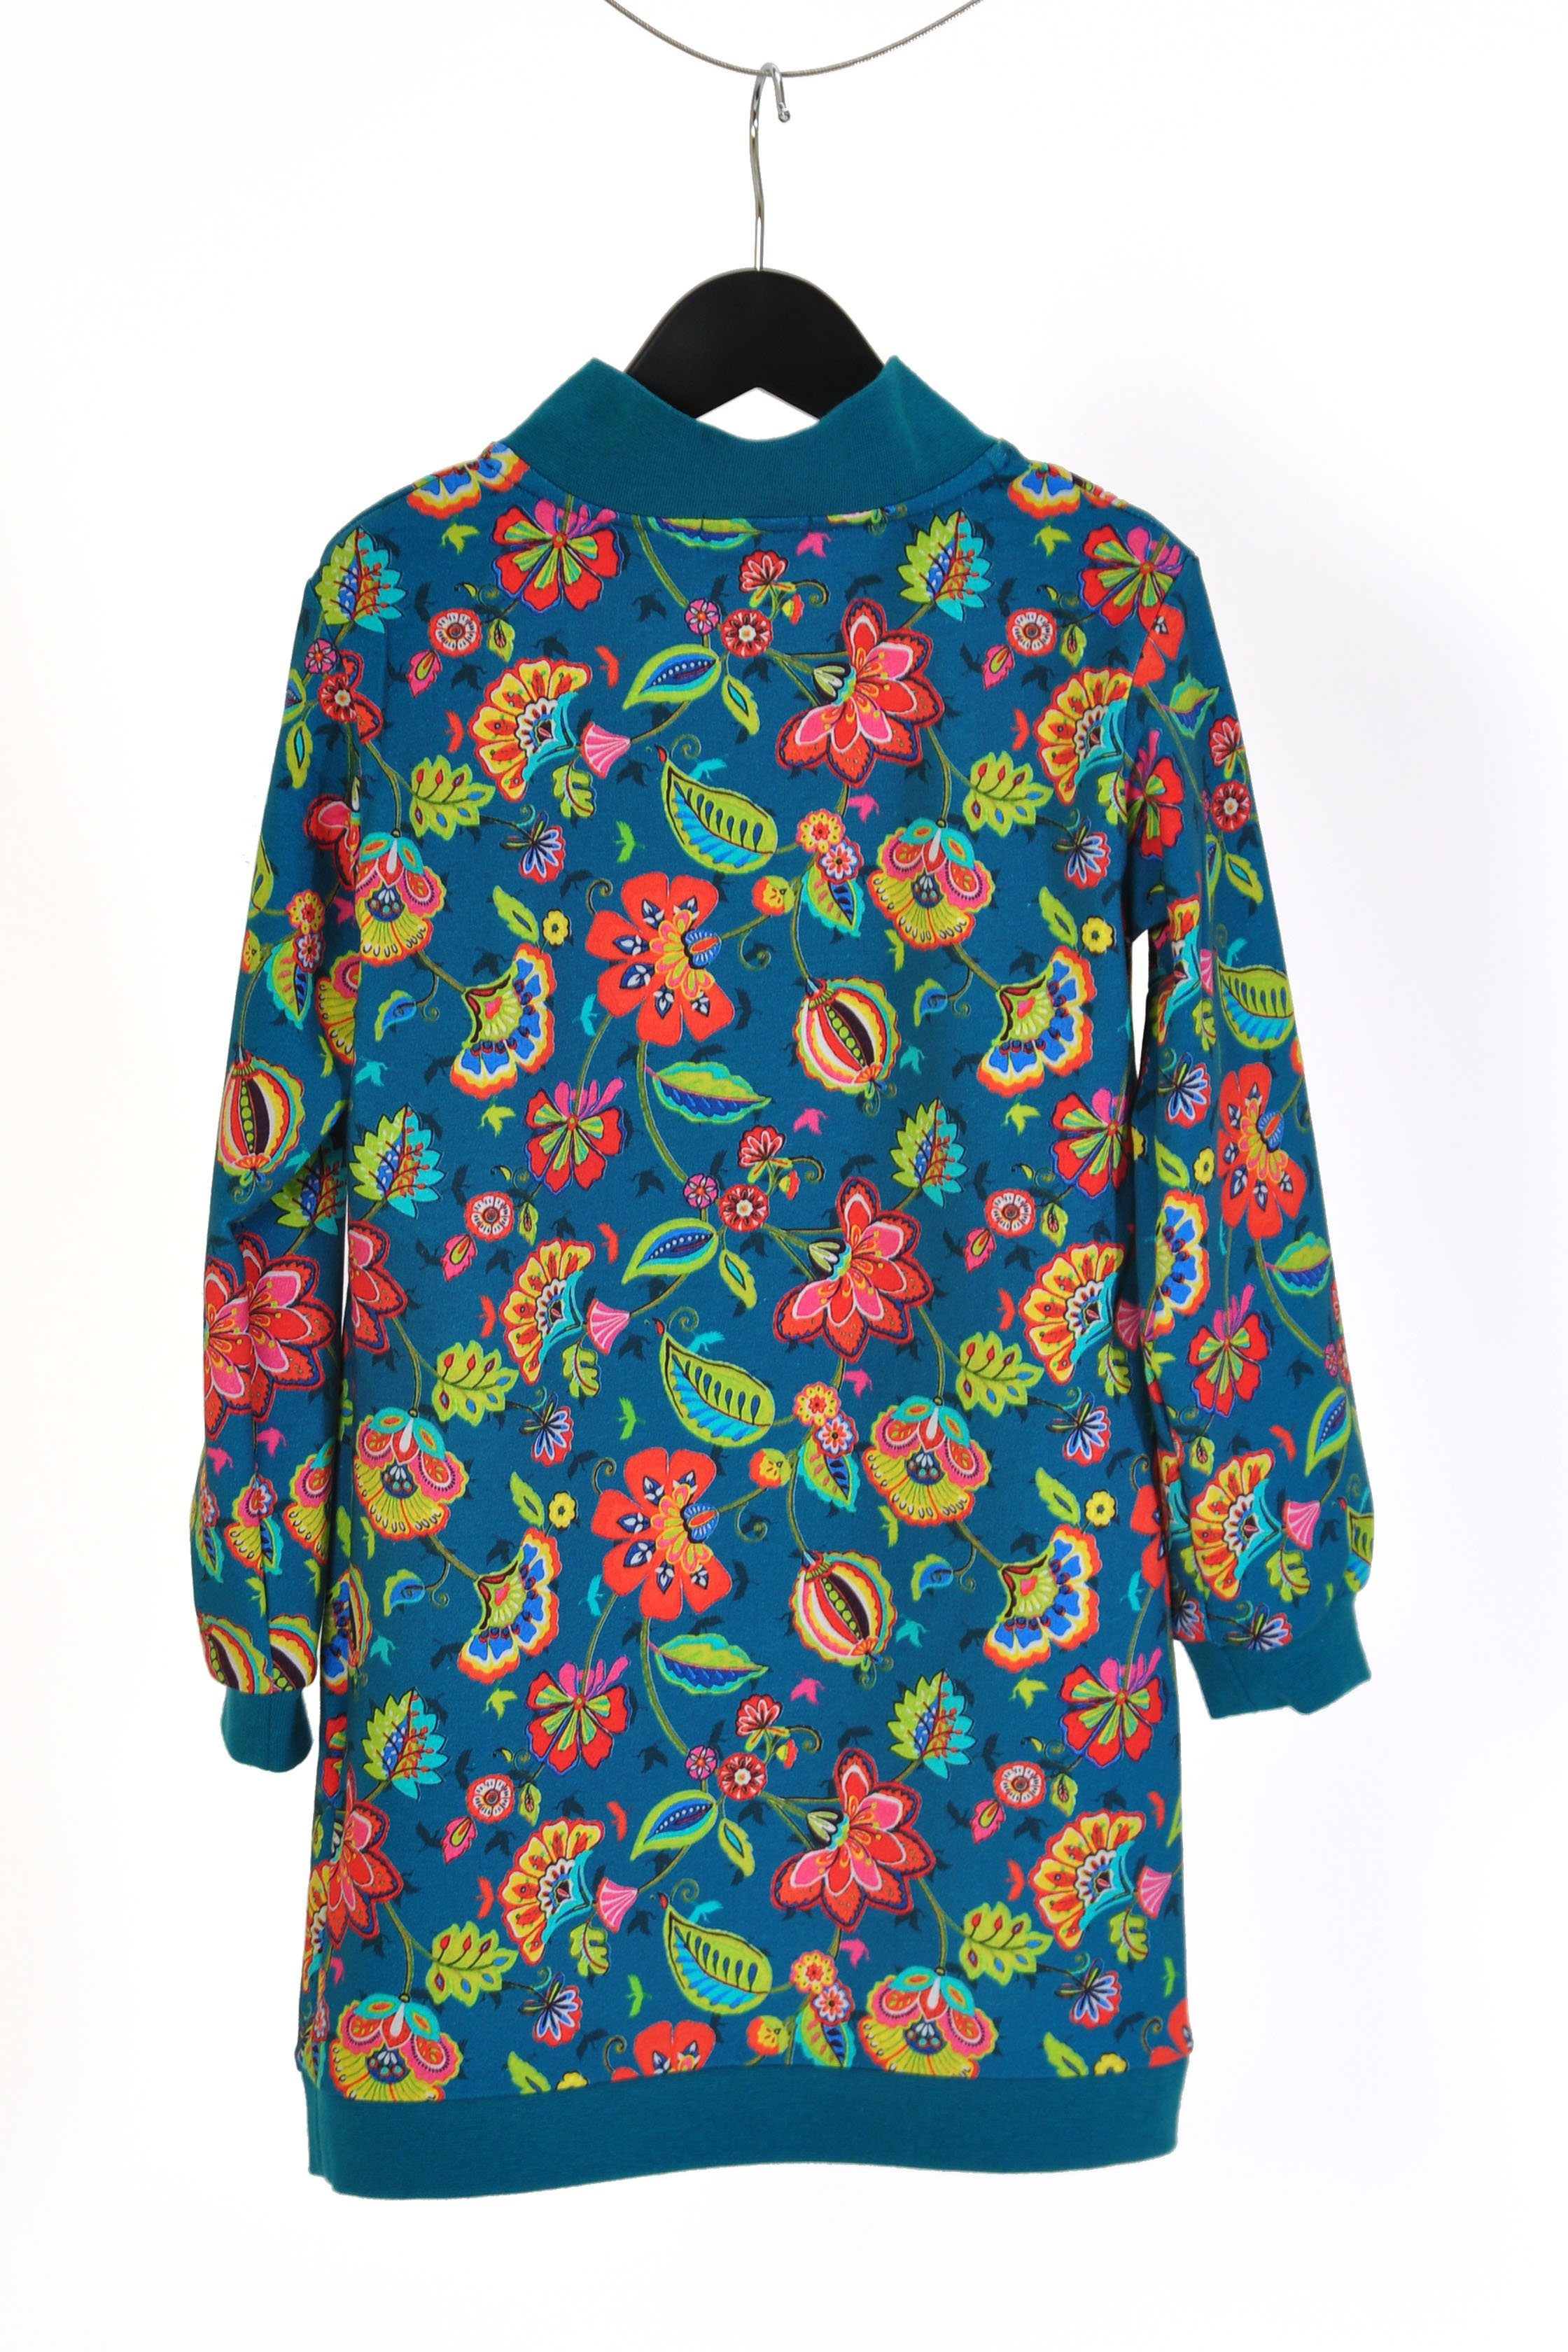 coolismo Sweatkleid Sweatshirt Mädchen Motivdruck petrol Kleid Blumen mit coole europäische Produktion für